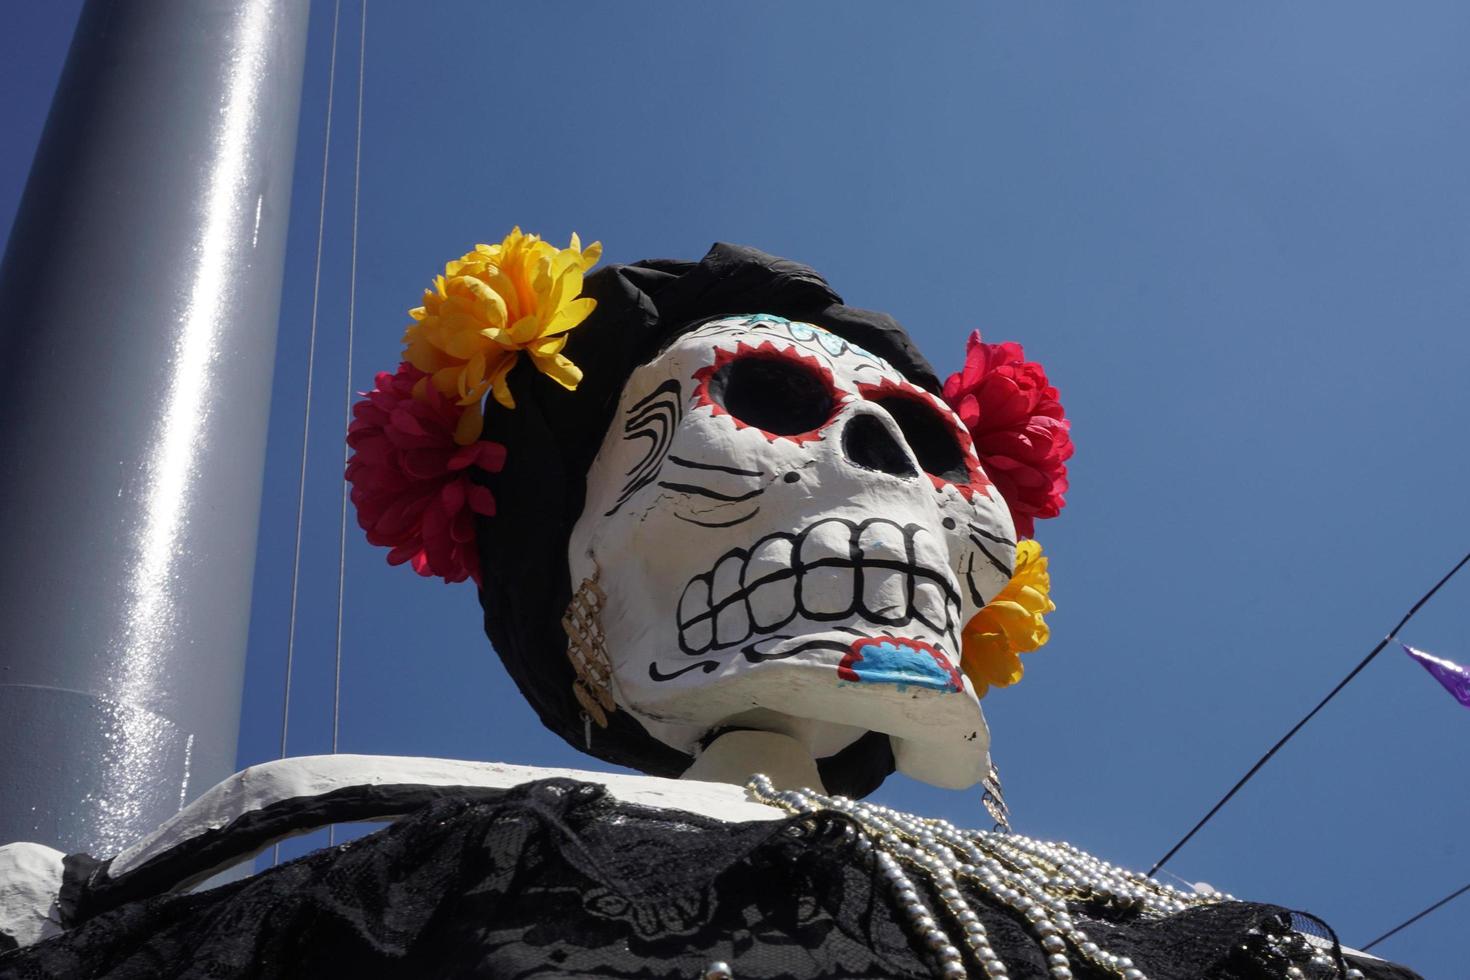 mexico stad, mexico - november 5 2017 - dag av död- firande foto